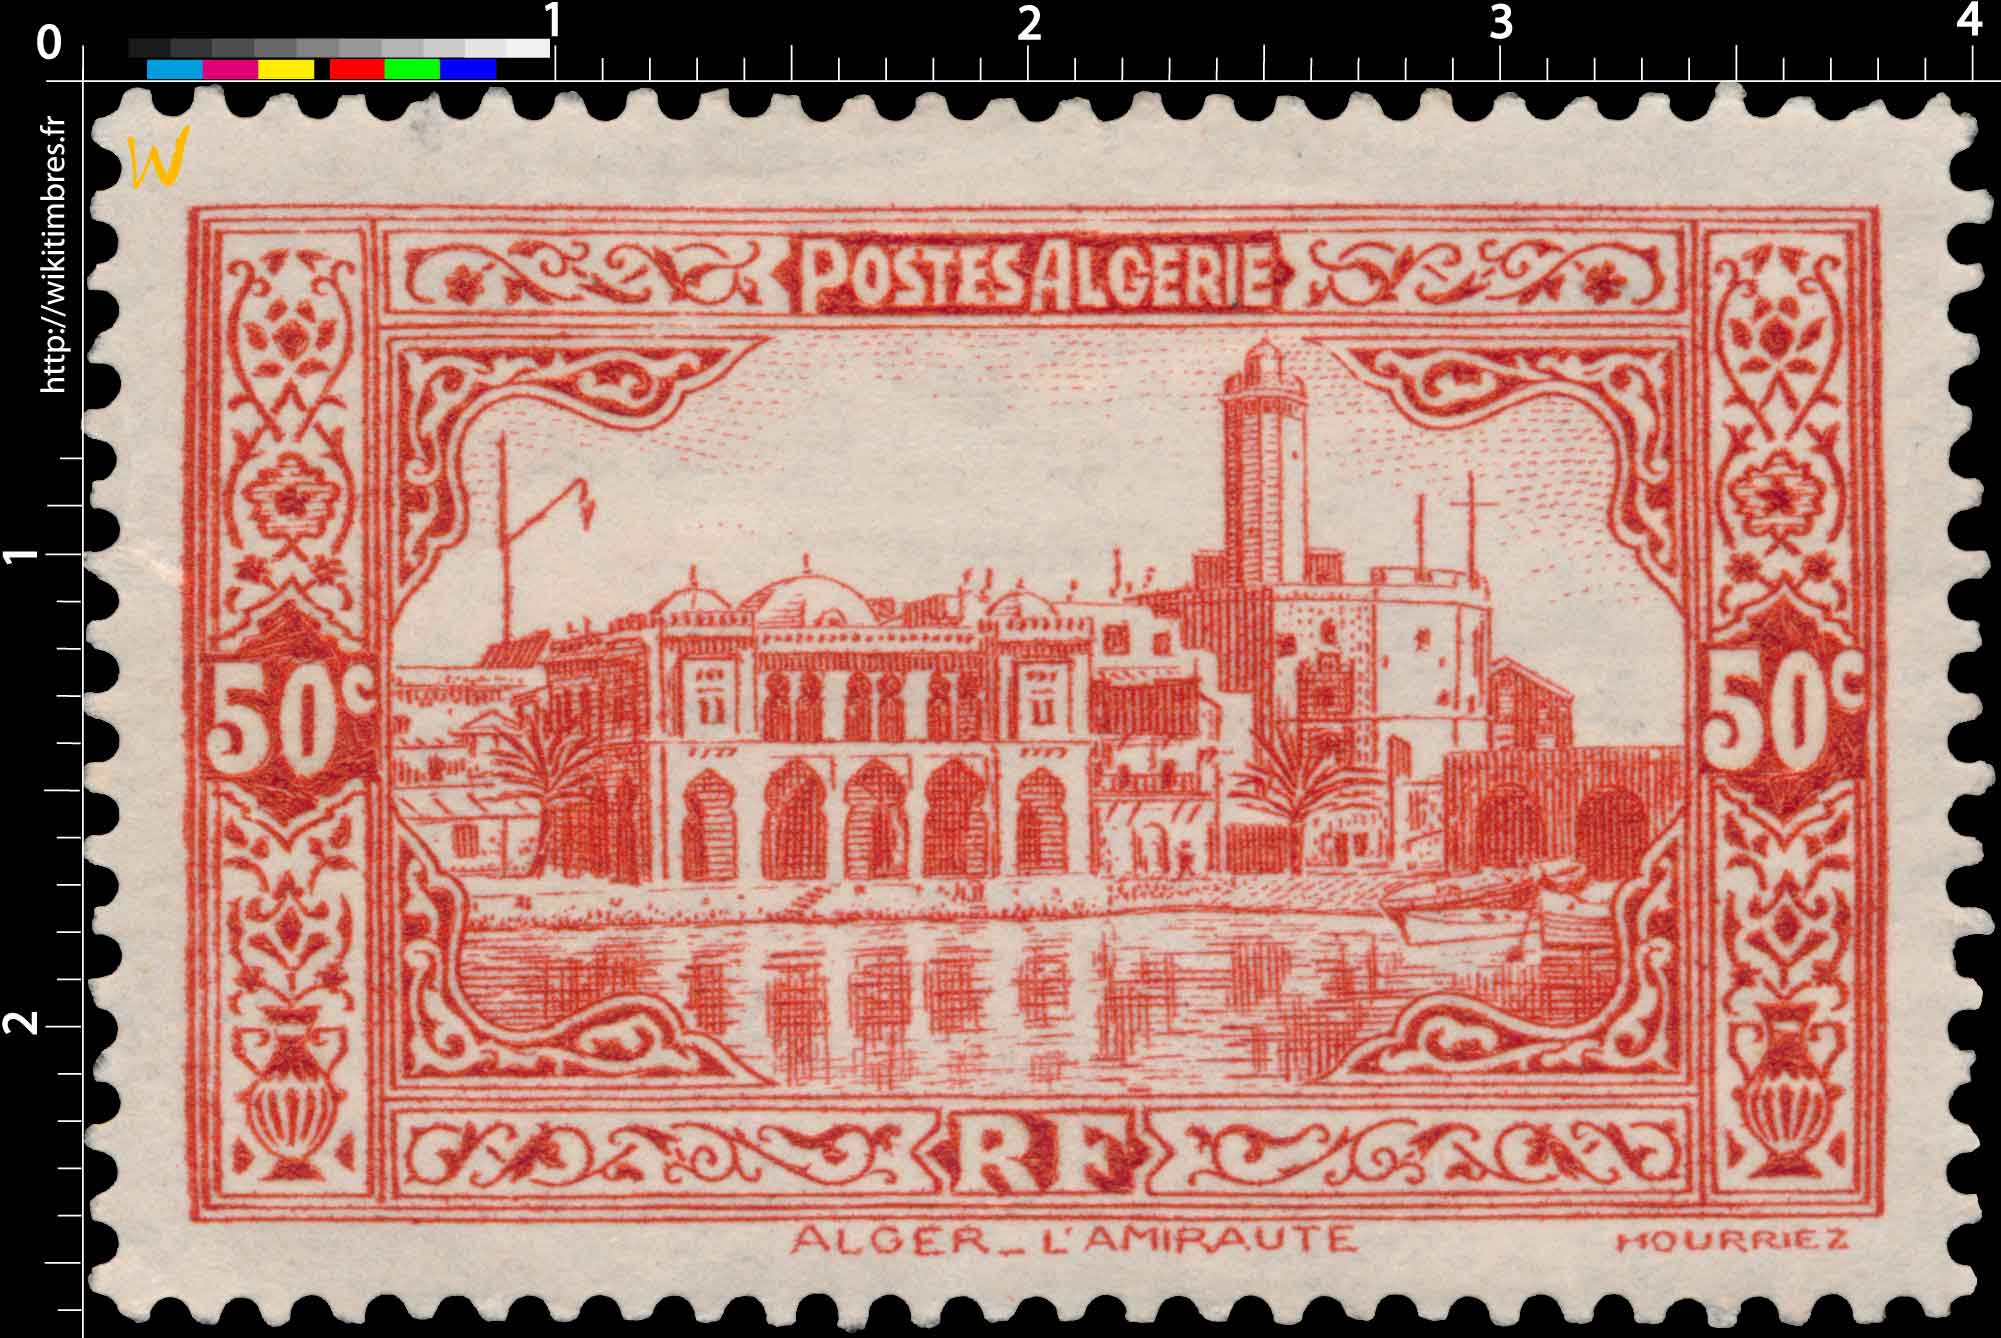 Algérie -  Alger L'Amirauté